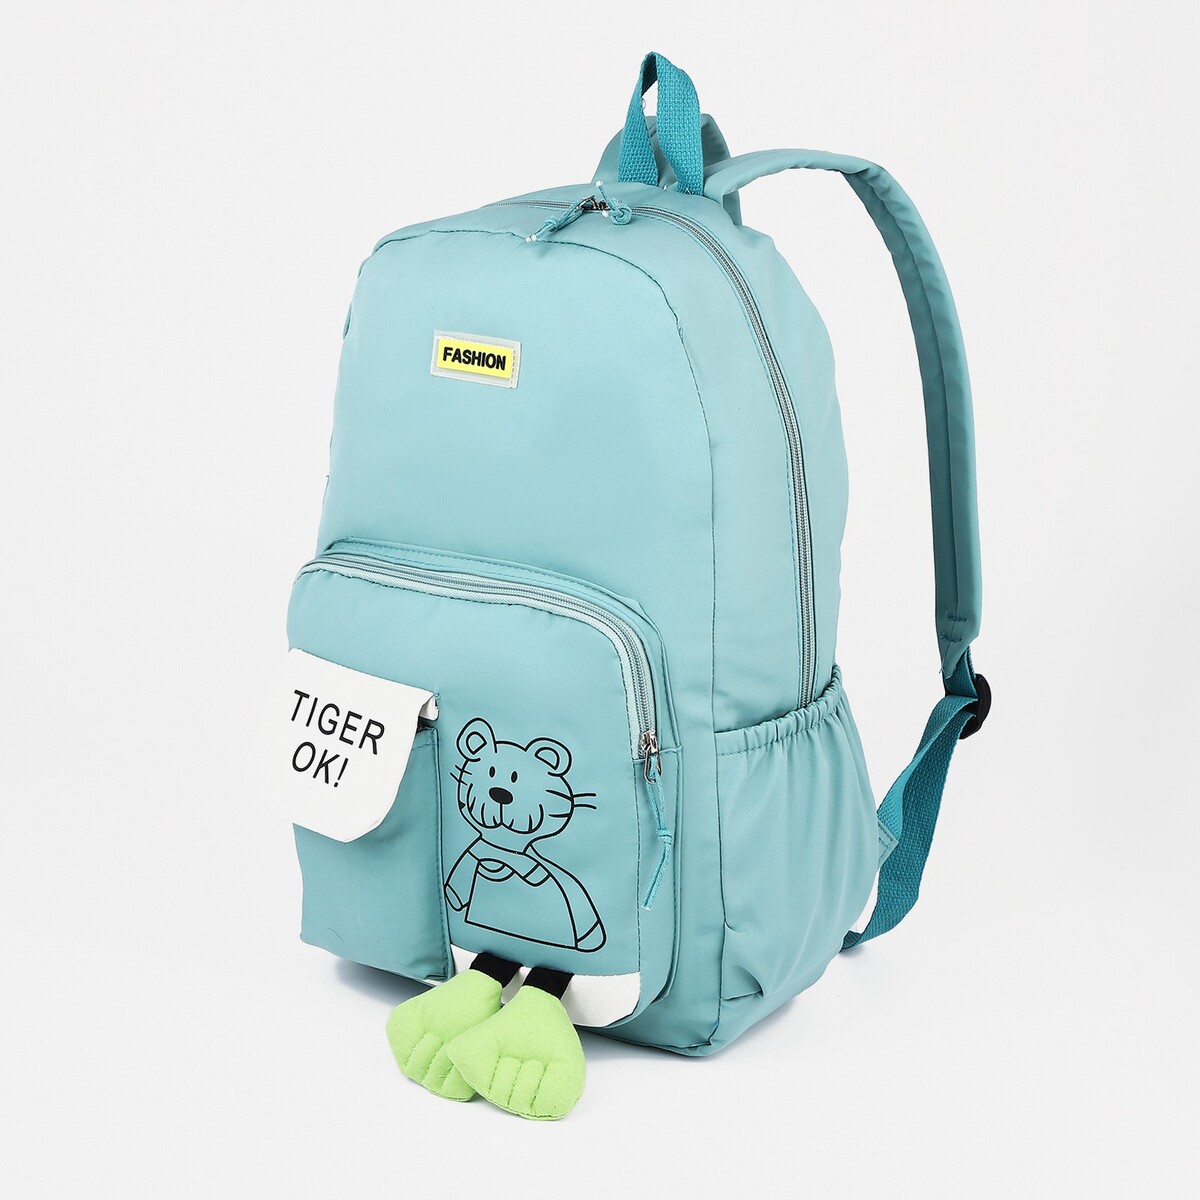 Рюкзак на молнии, 3 наружных кармана, цвет бирюзовый рюкзак школьный из текстиля на молнии 3 кармана бирюзовый